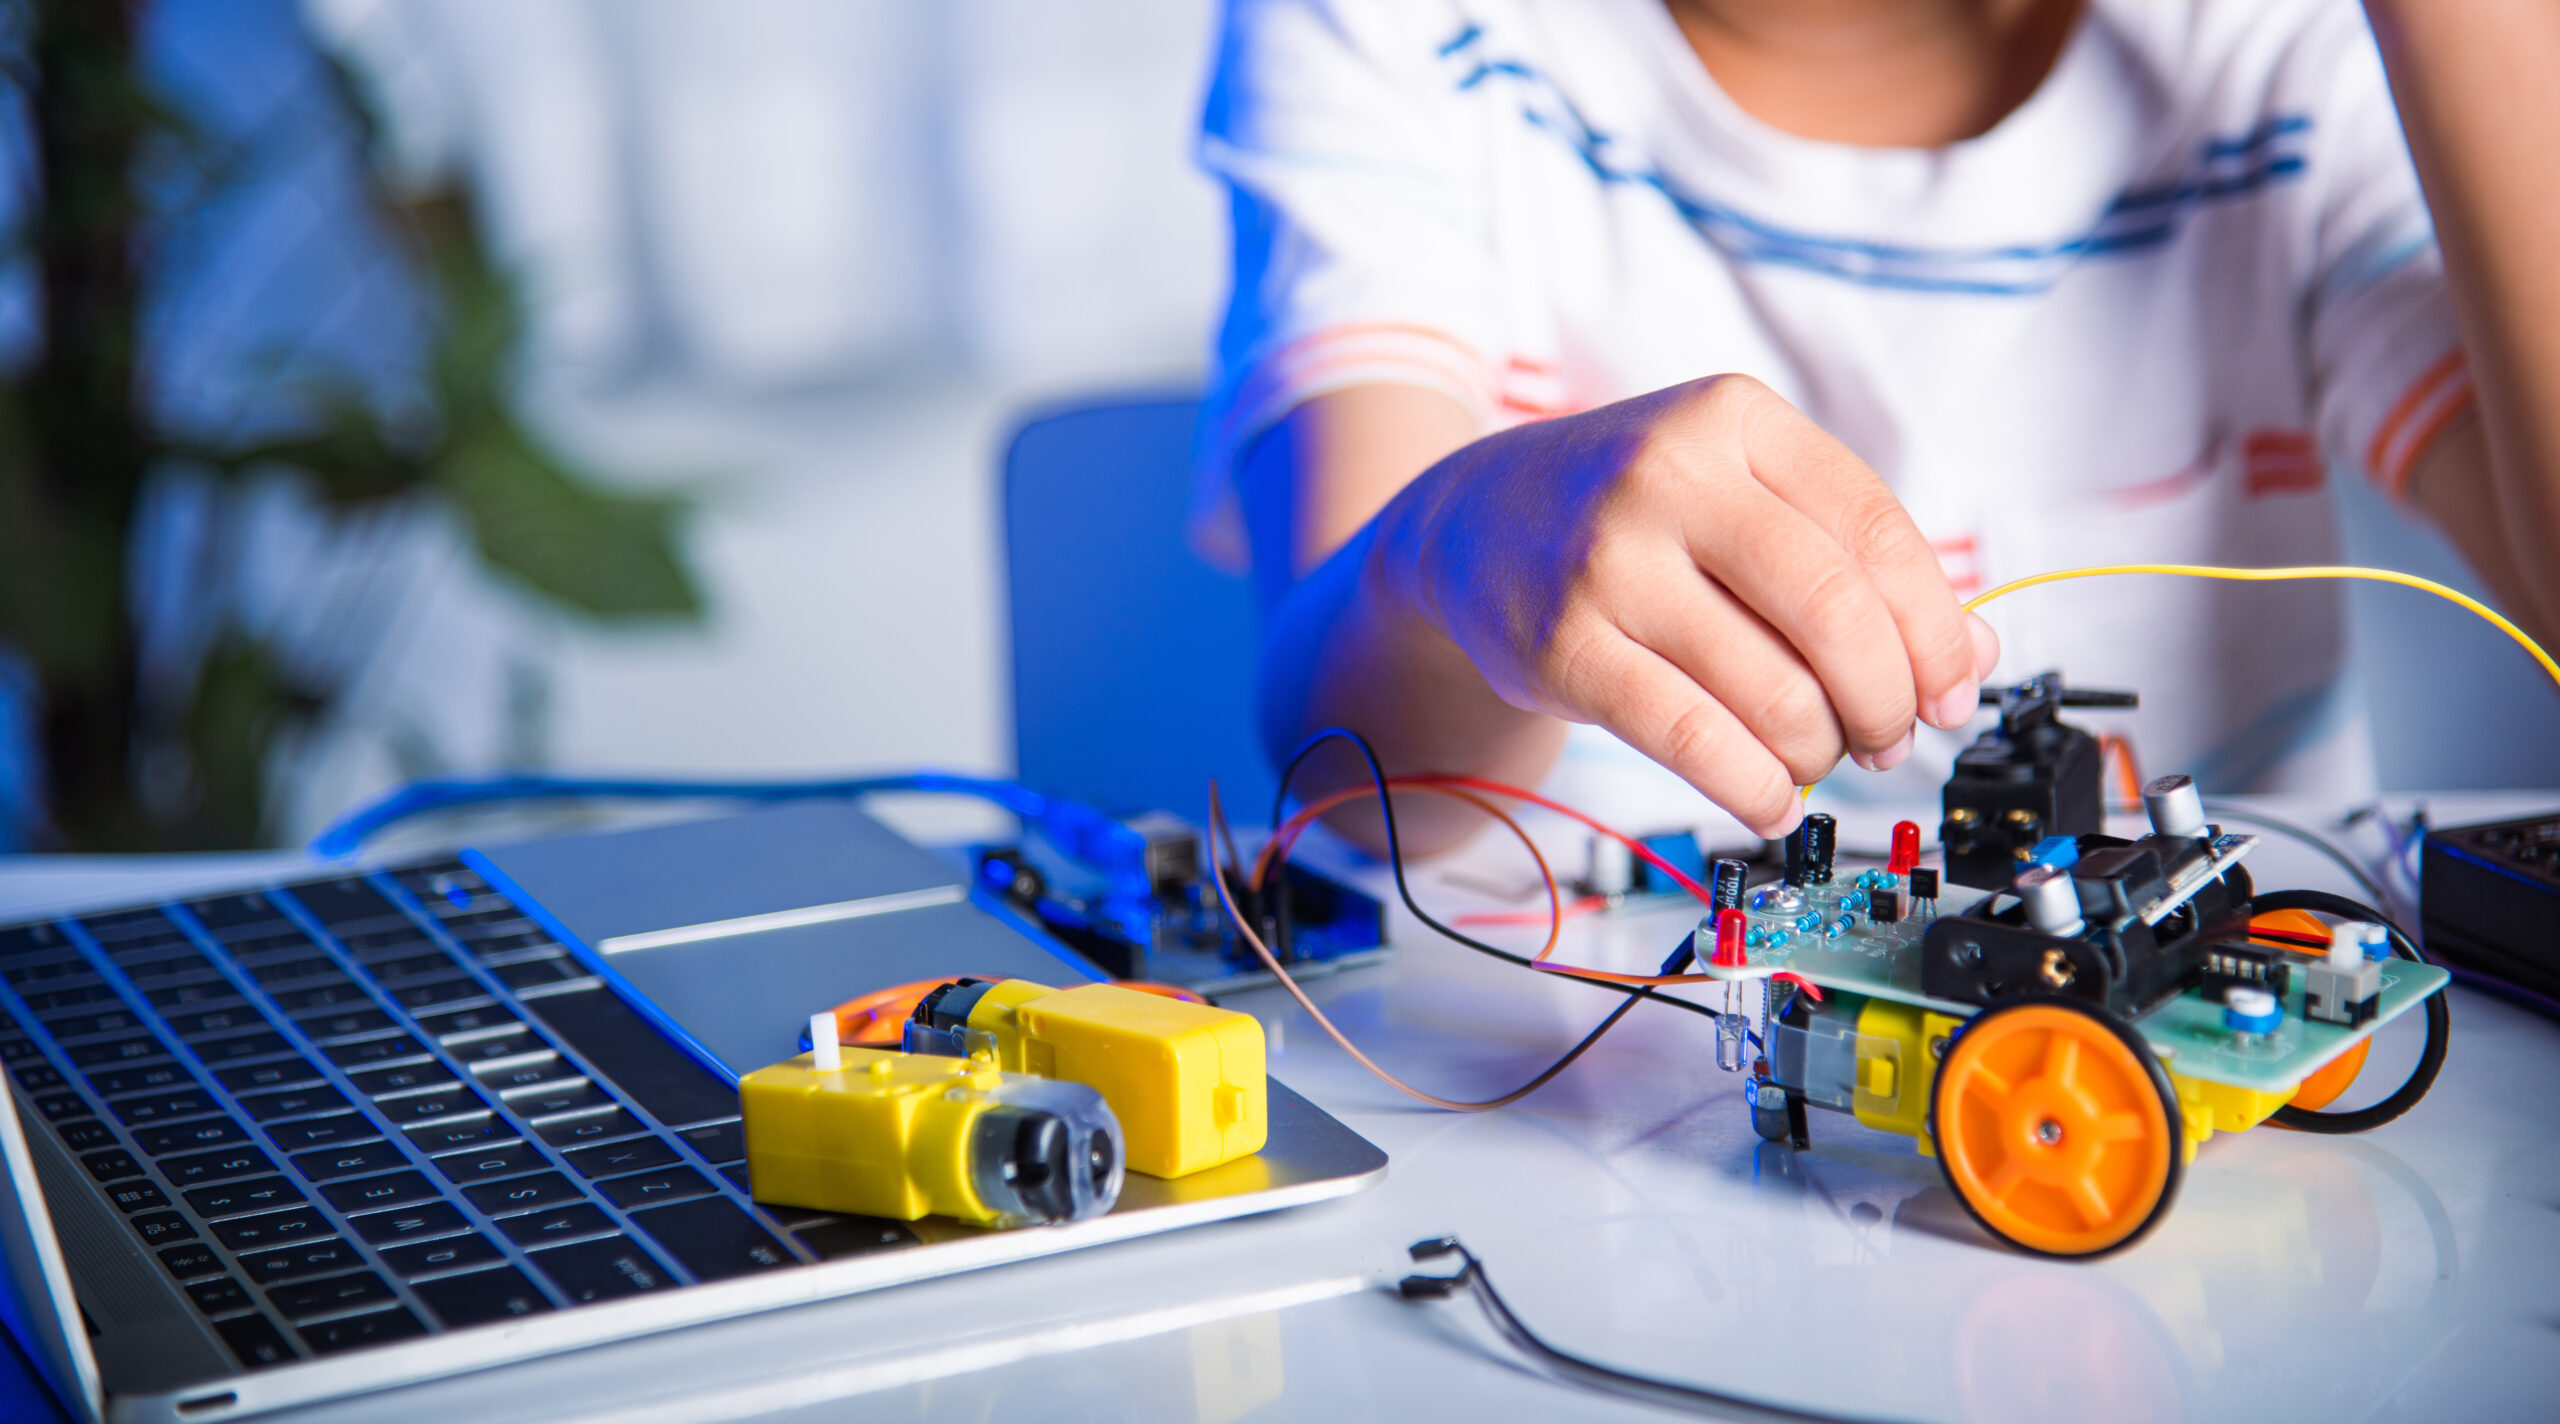 child programming a robotic car model